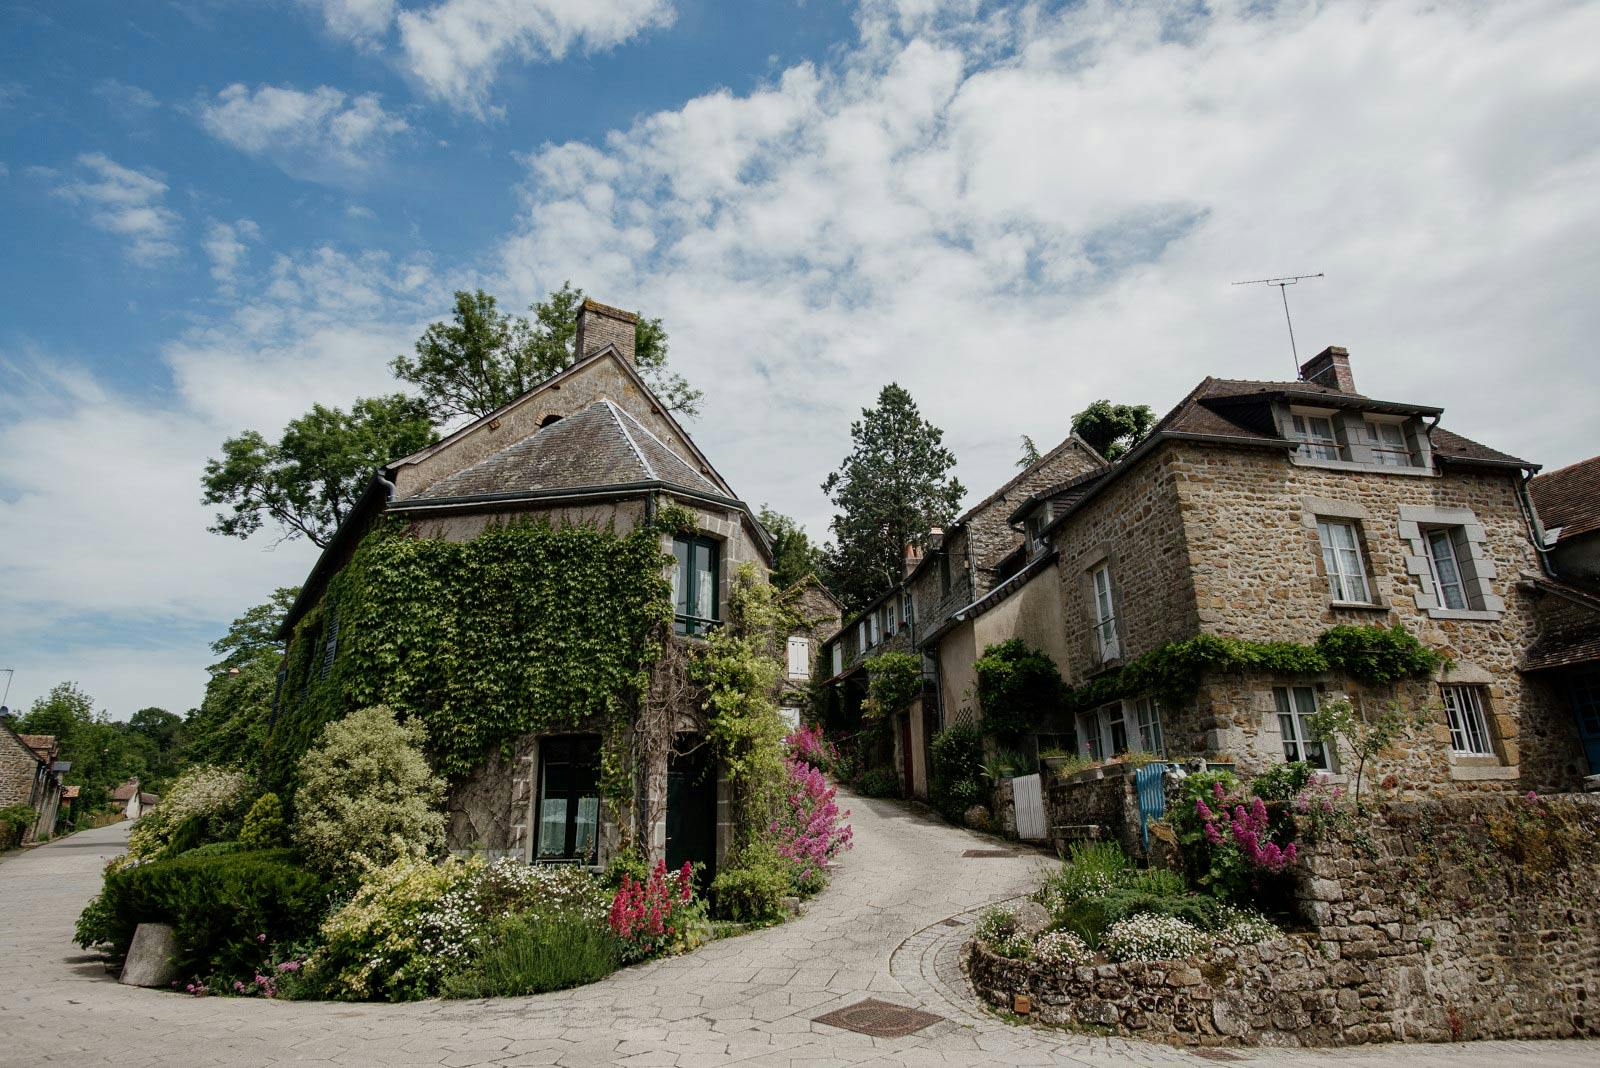 Le village de Saint-Céneri-le-Gérei, classé parmi les plus beaux villages de France.